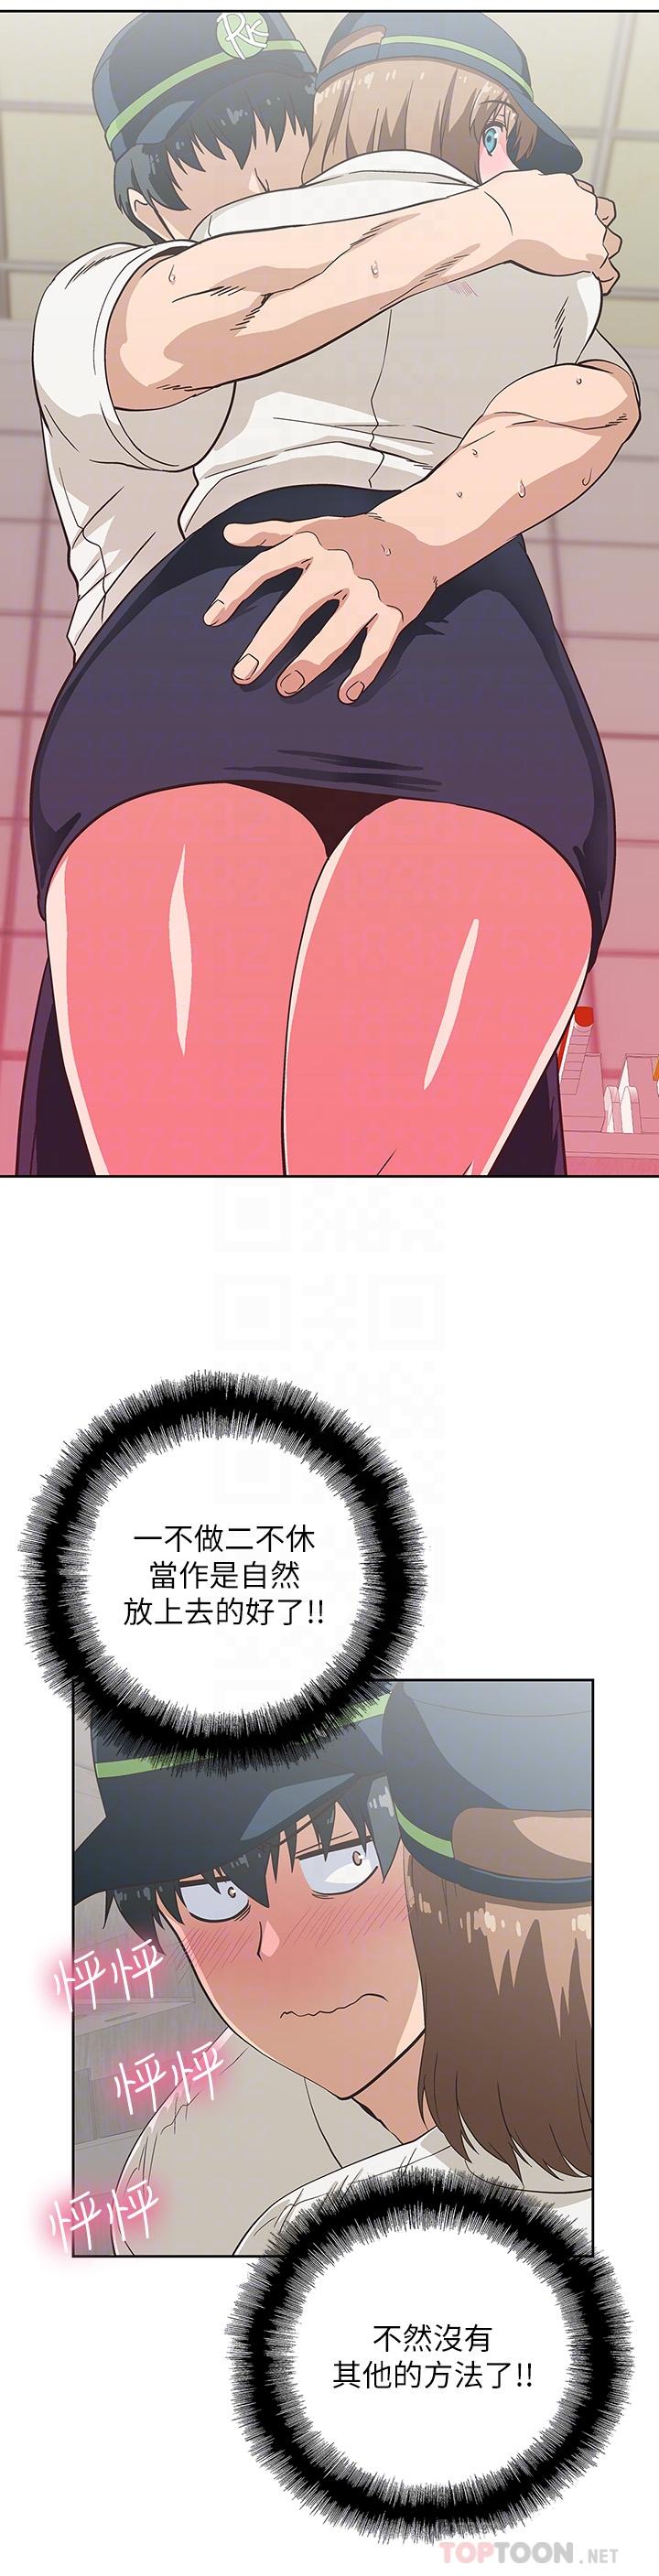 《梦幻速食店》漫画 第10话 - 谁会被征服呢…!?